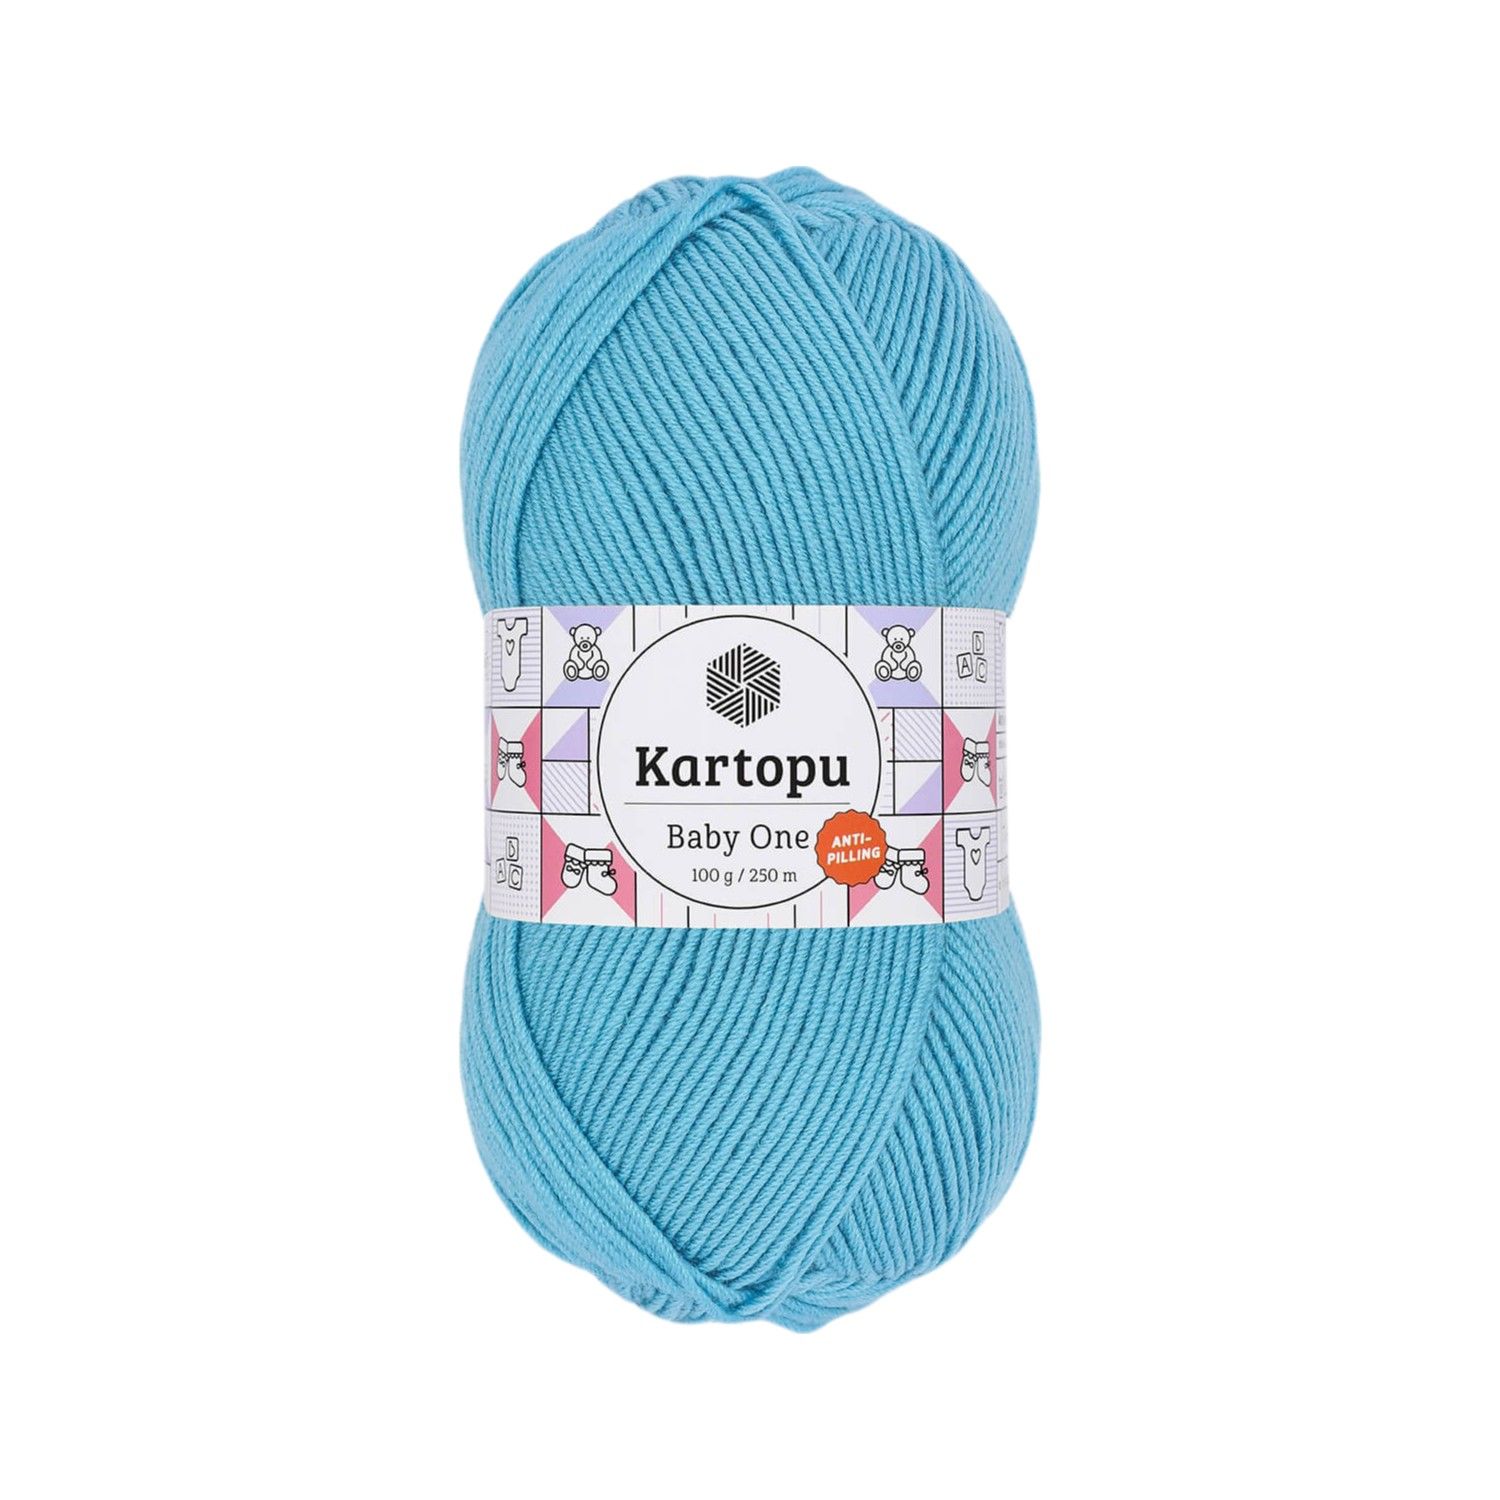 KARTOPU BABY ONE - Baby Knitting Yarn K657